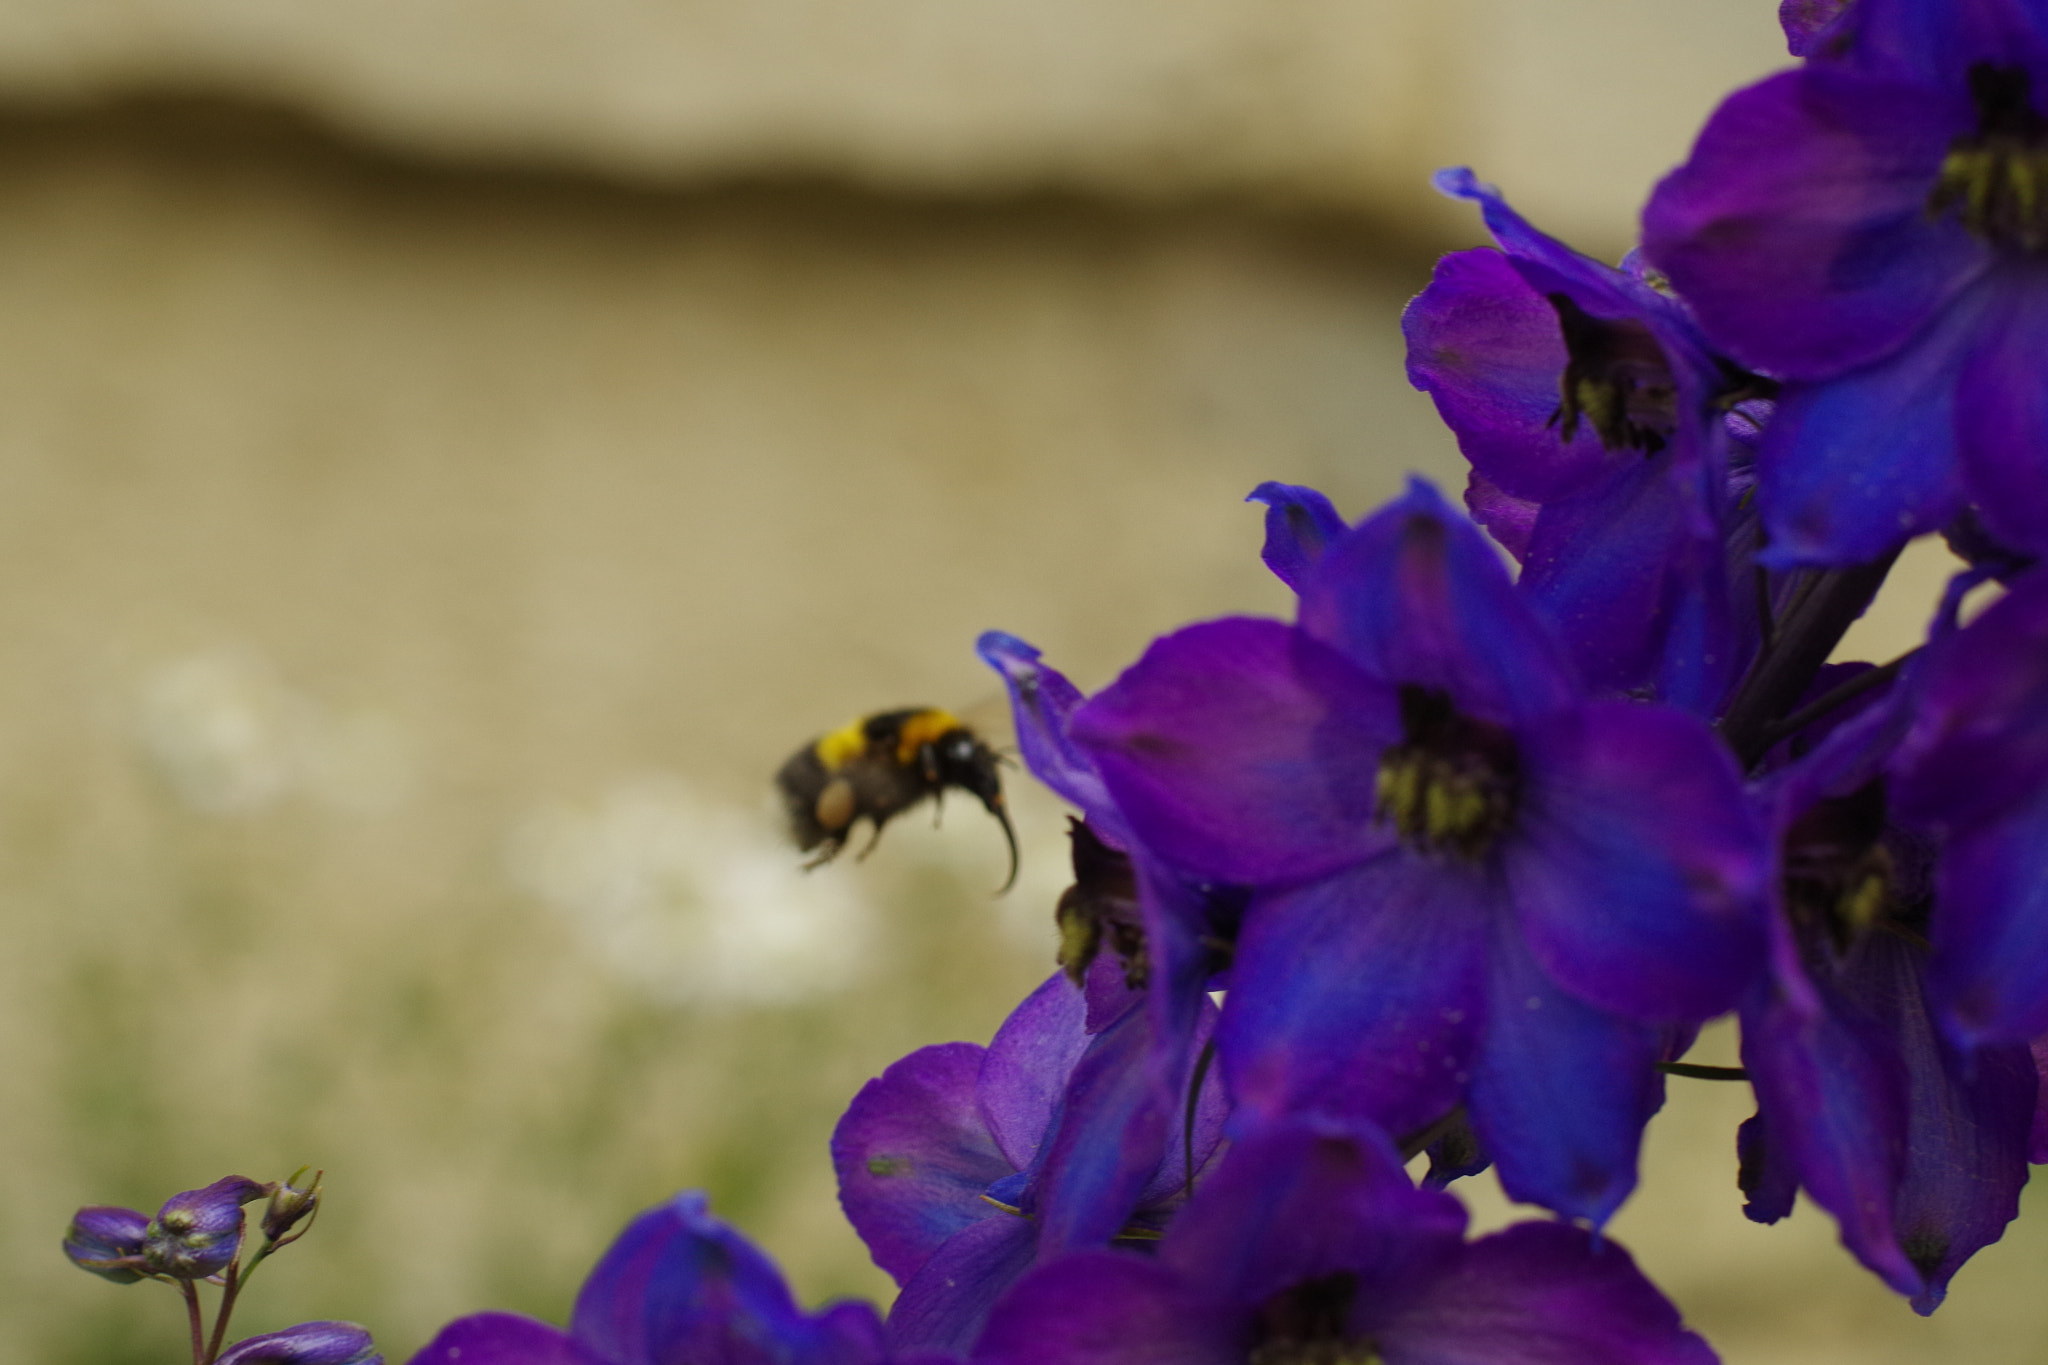 Pentax K-30 sample photo. La trompe d'abeille photography